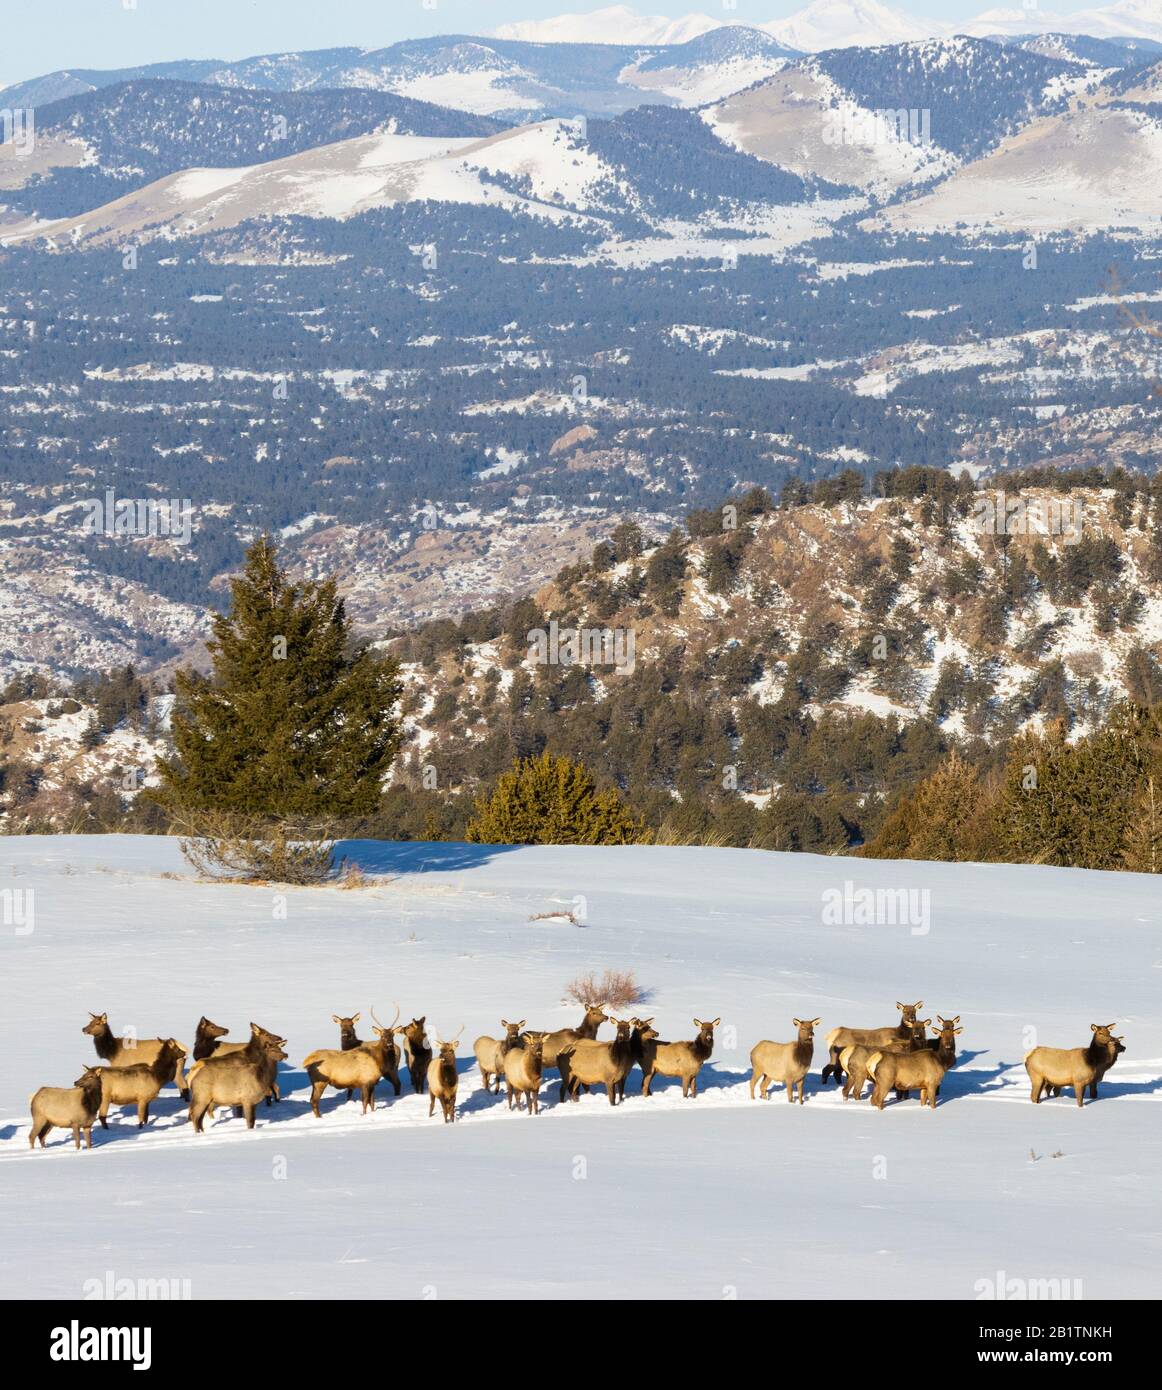 Un petit troupeau de wapitis qui traverse la neige profonde sur un sommet enneigé de la forêt nationale de Pike, dans le Colorado Banque D'Images